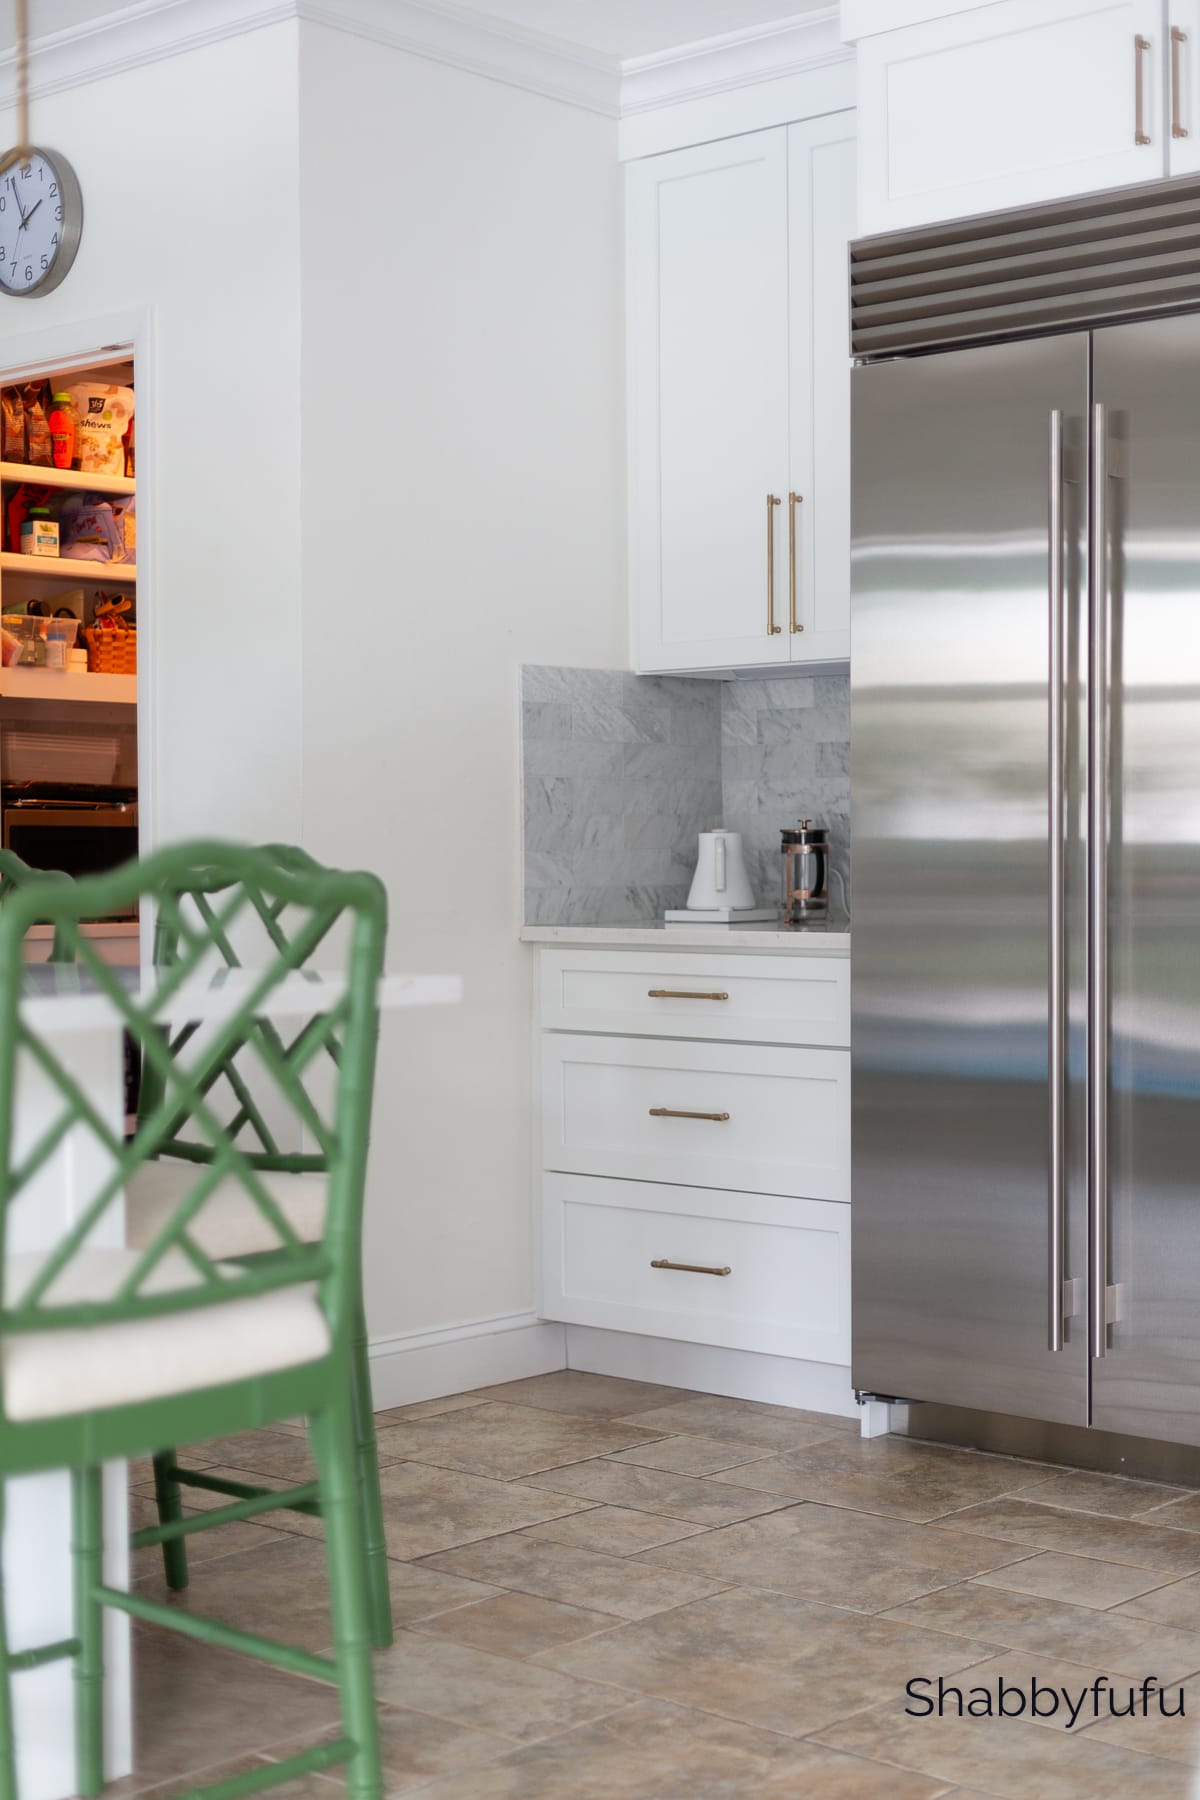 kitchen with subzero fridge and marble backsplash